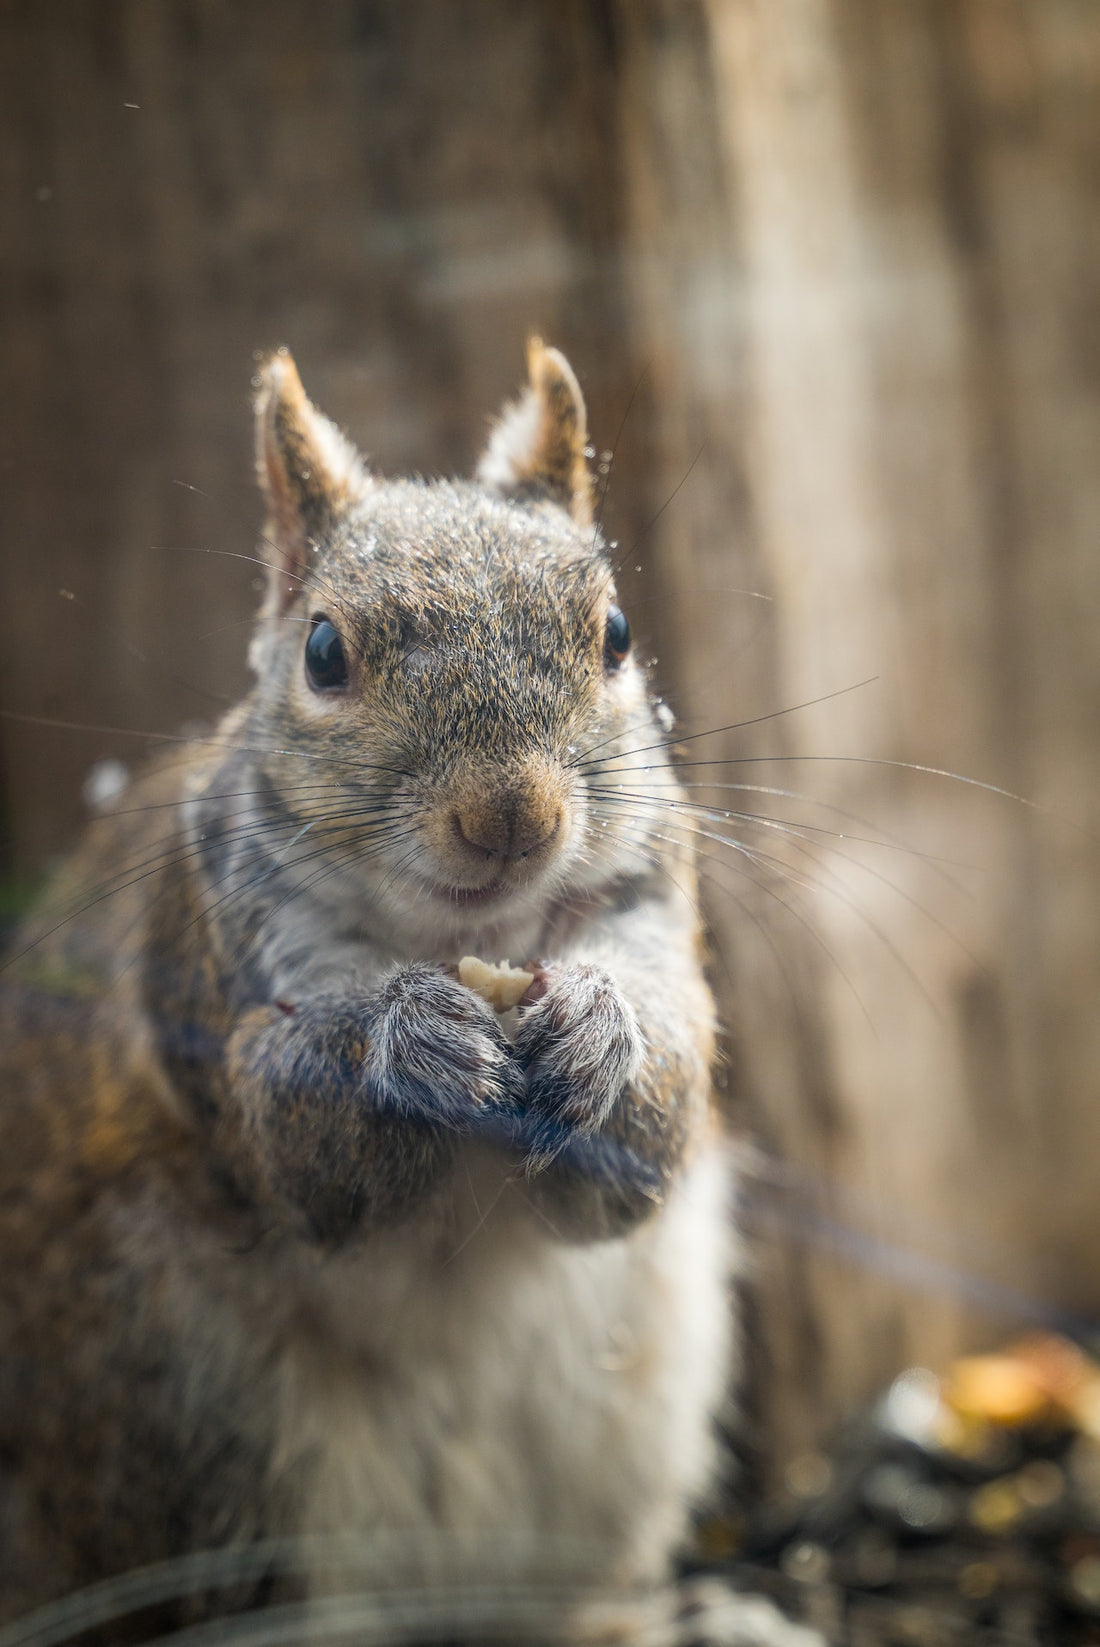 Can Squirrels Eat Raisins